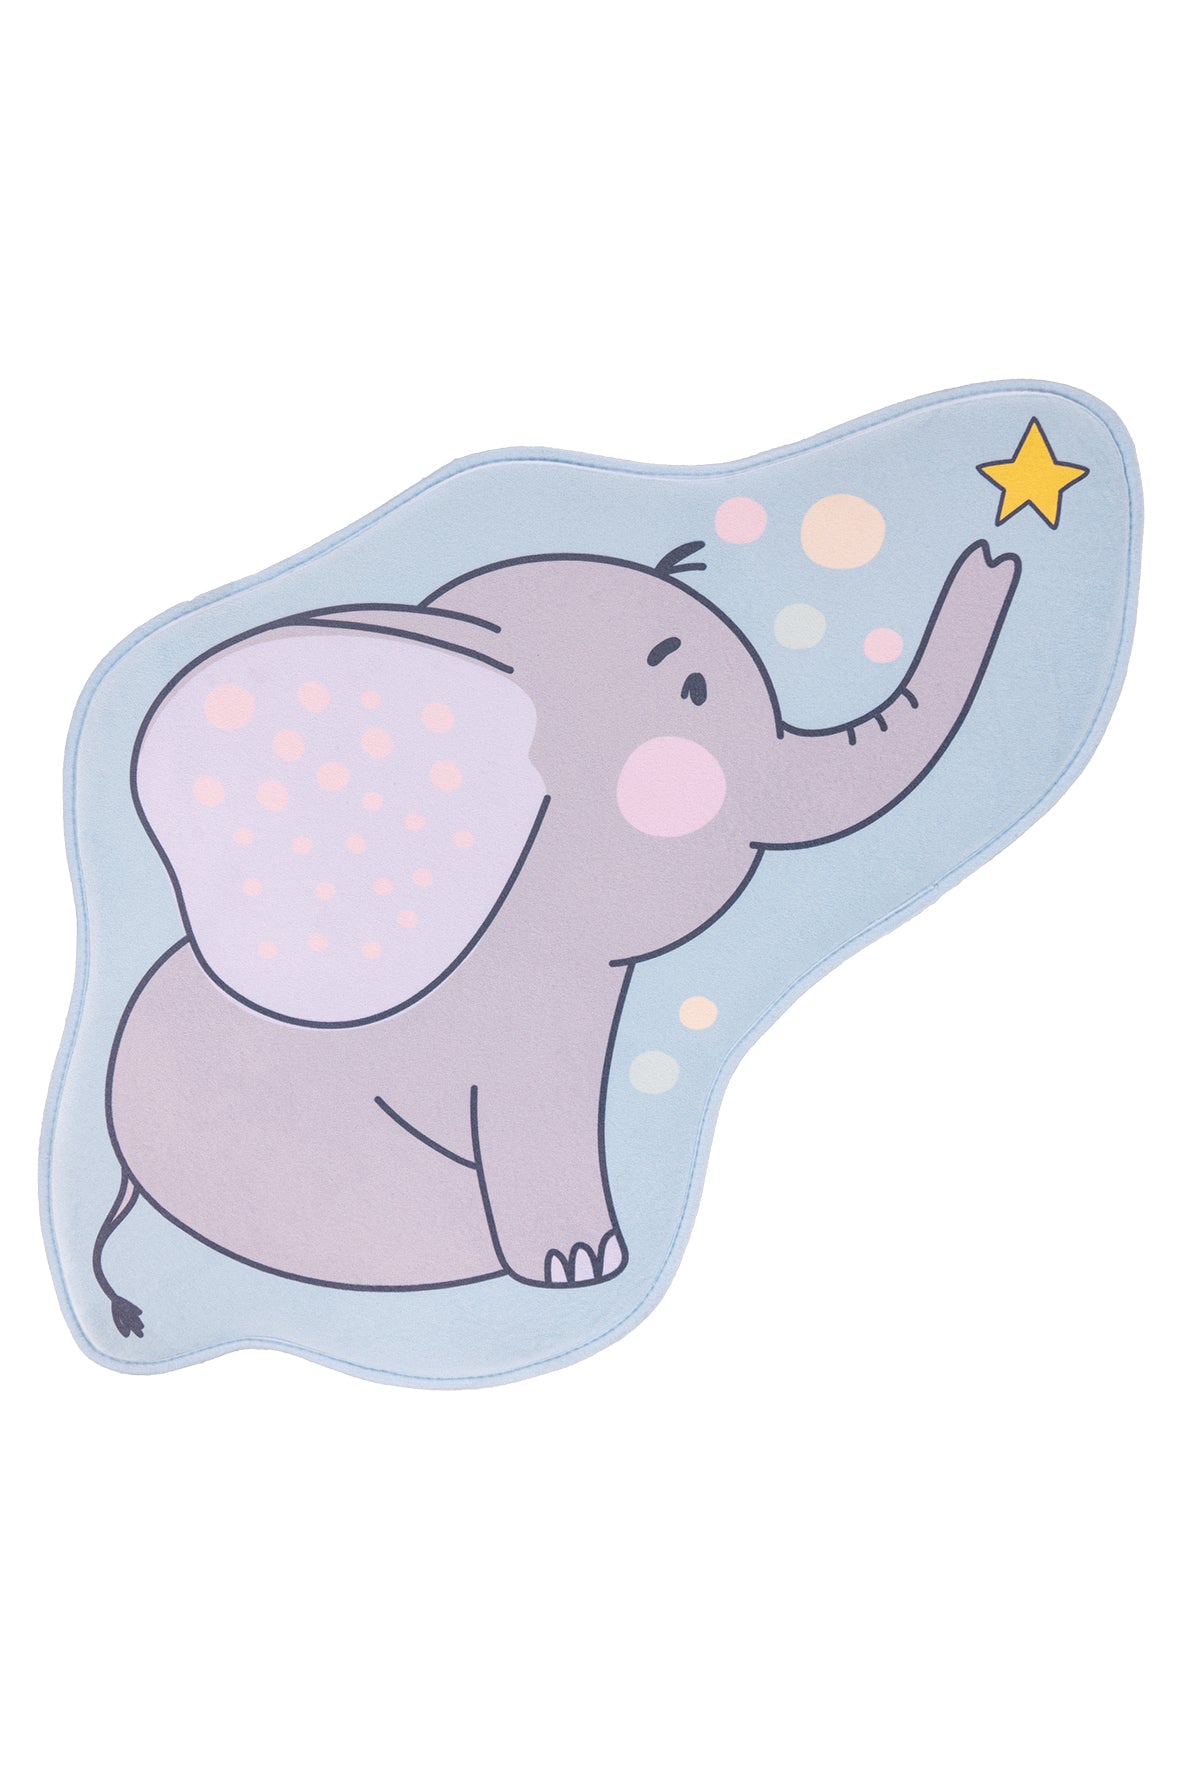 My Mila Kids 151 Elefant Muster Teppich: Entfaltungsfreiraum für kindliche Schönheit